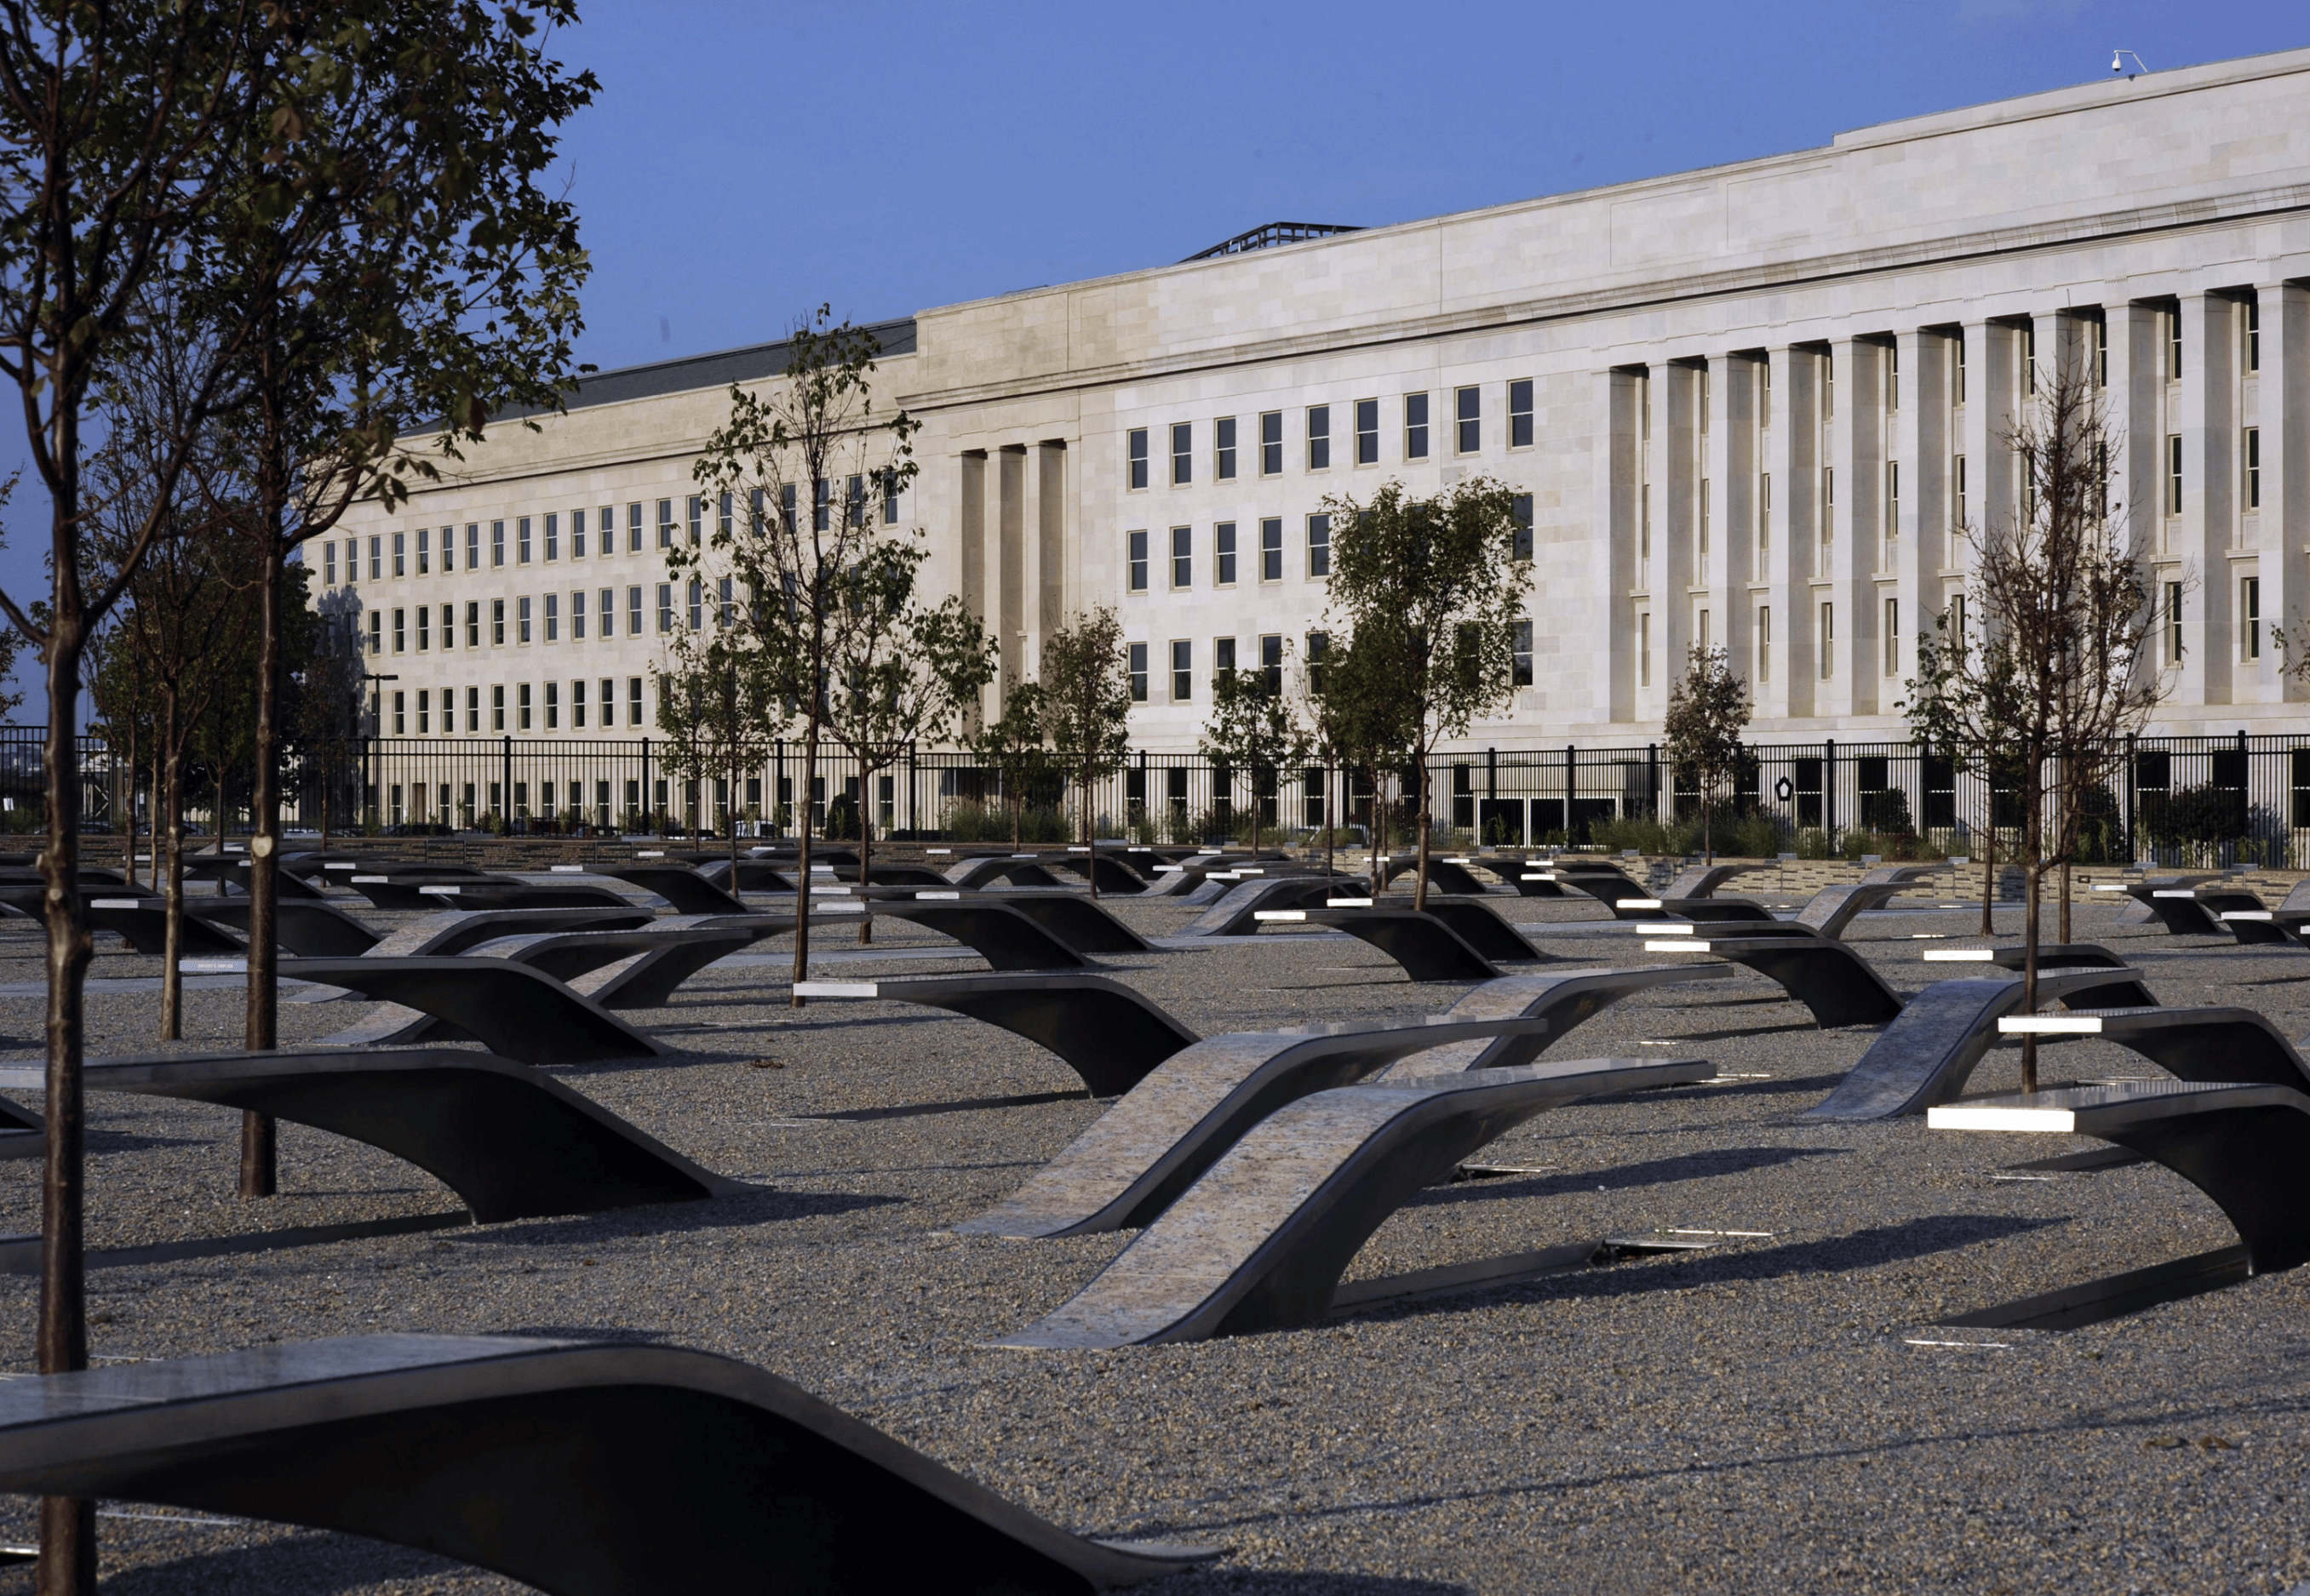 Ghé Thăm Pentagon Memorial Du Khách Có Thể Tới đây để Tưởng Niệm Và Học Hỏi Về Sự Kiện Lịch Sử Quan Trọng Này